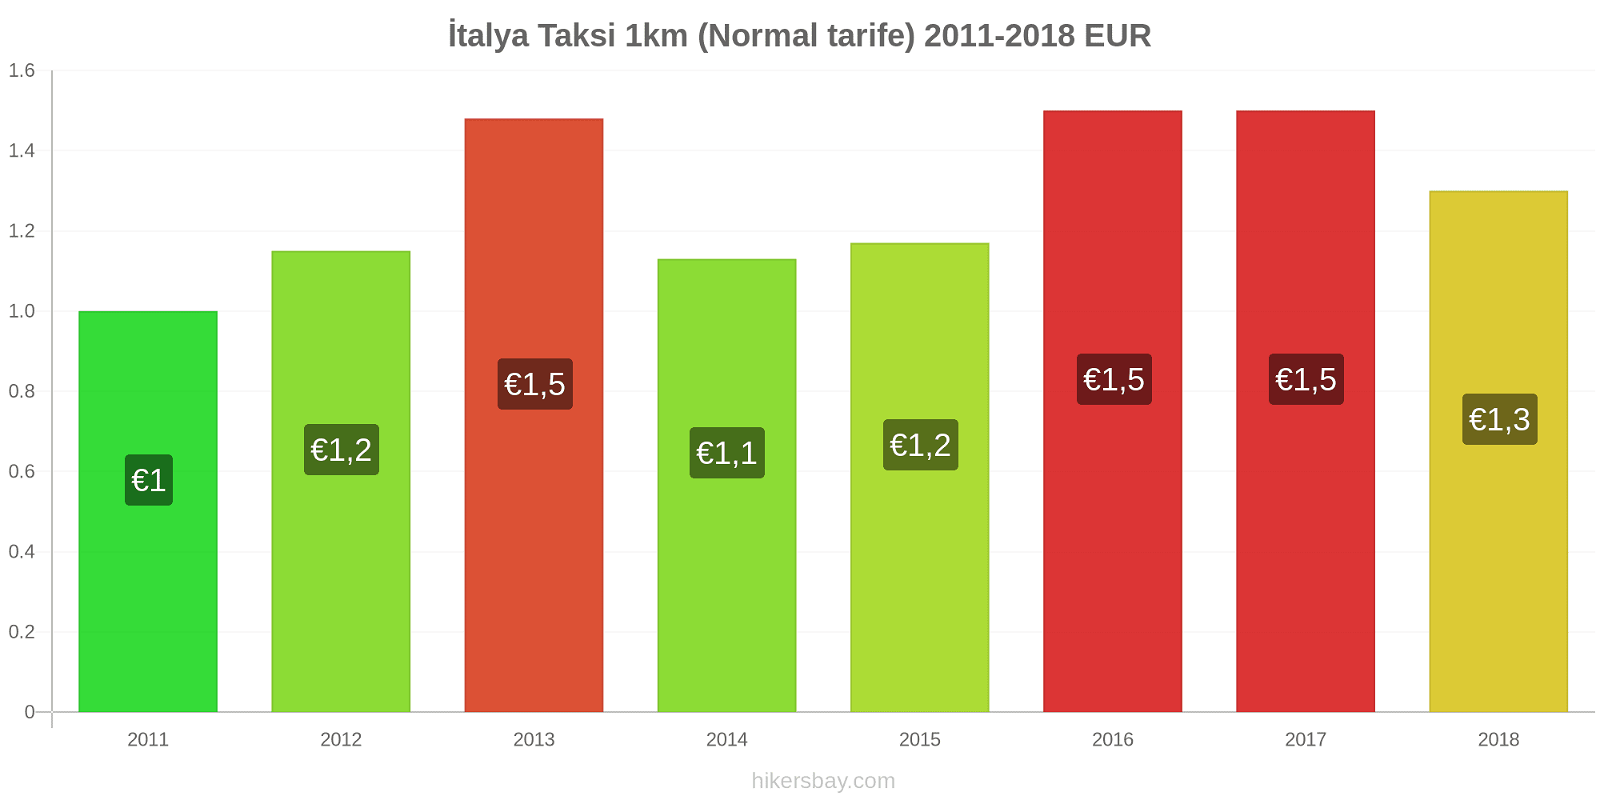 İtalya fiyat değişiklikleri Taksi 1km (Normal tarife) hikersbay.com